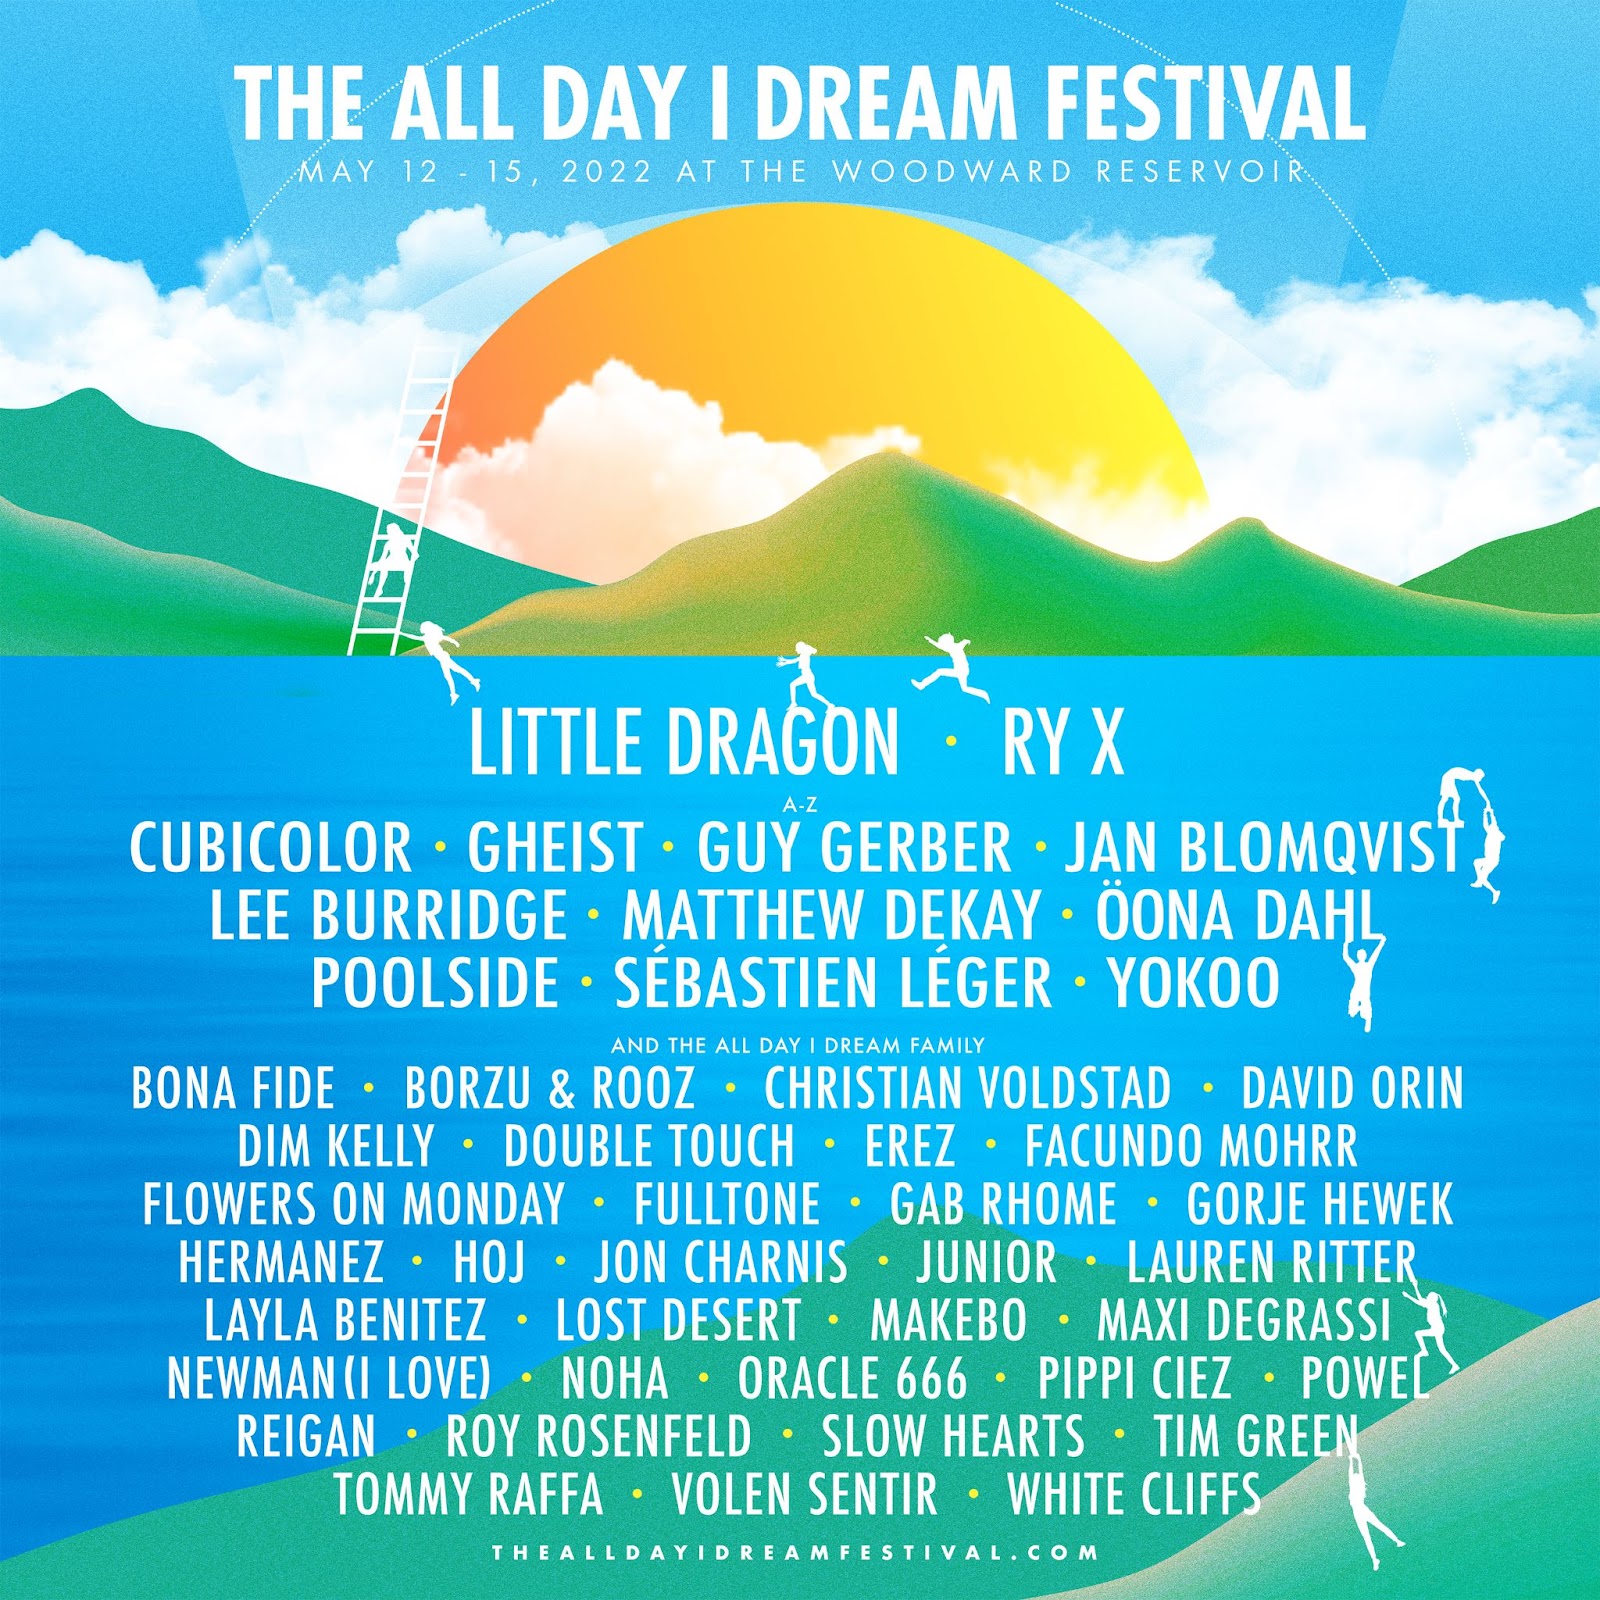 All Day I Dream announces debut festival lineup: Lee Burridge, Little Dragon, Sébastien Léger, and moreQuB RSmiQVKDmWG4l JchRKqMv4Ew3SL8 3cEB DiP2rGkGC94RQKrq ORD2WUmqII3IPNJeGK1btENF41Zz5rrINREE L2J S3RBMJApqz Z7V9vQTDb WqaauwQoETR HP